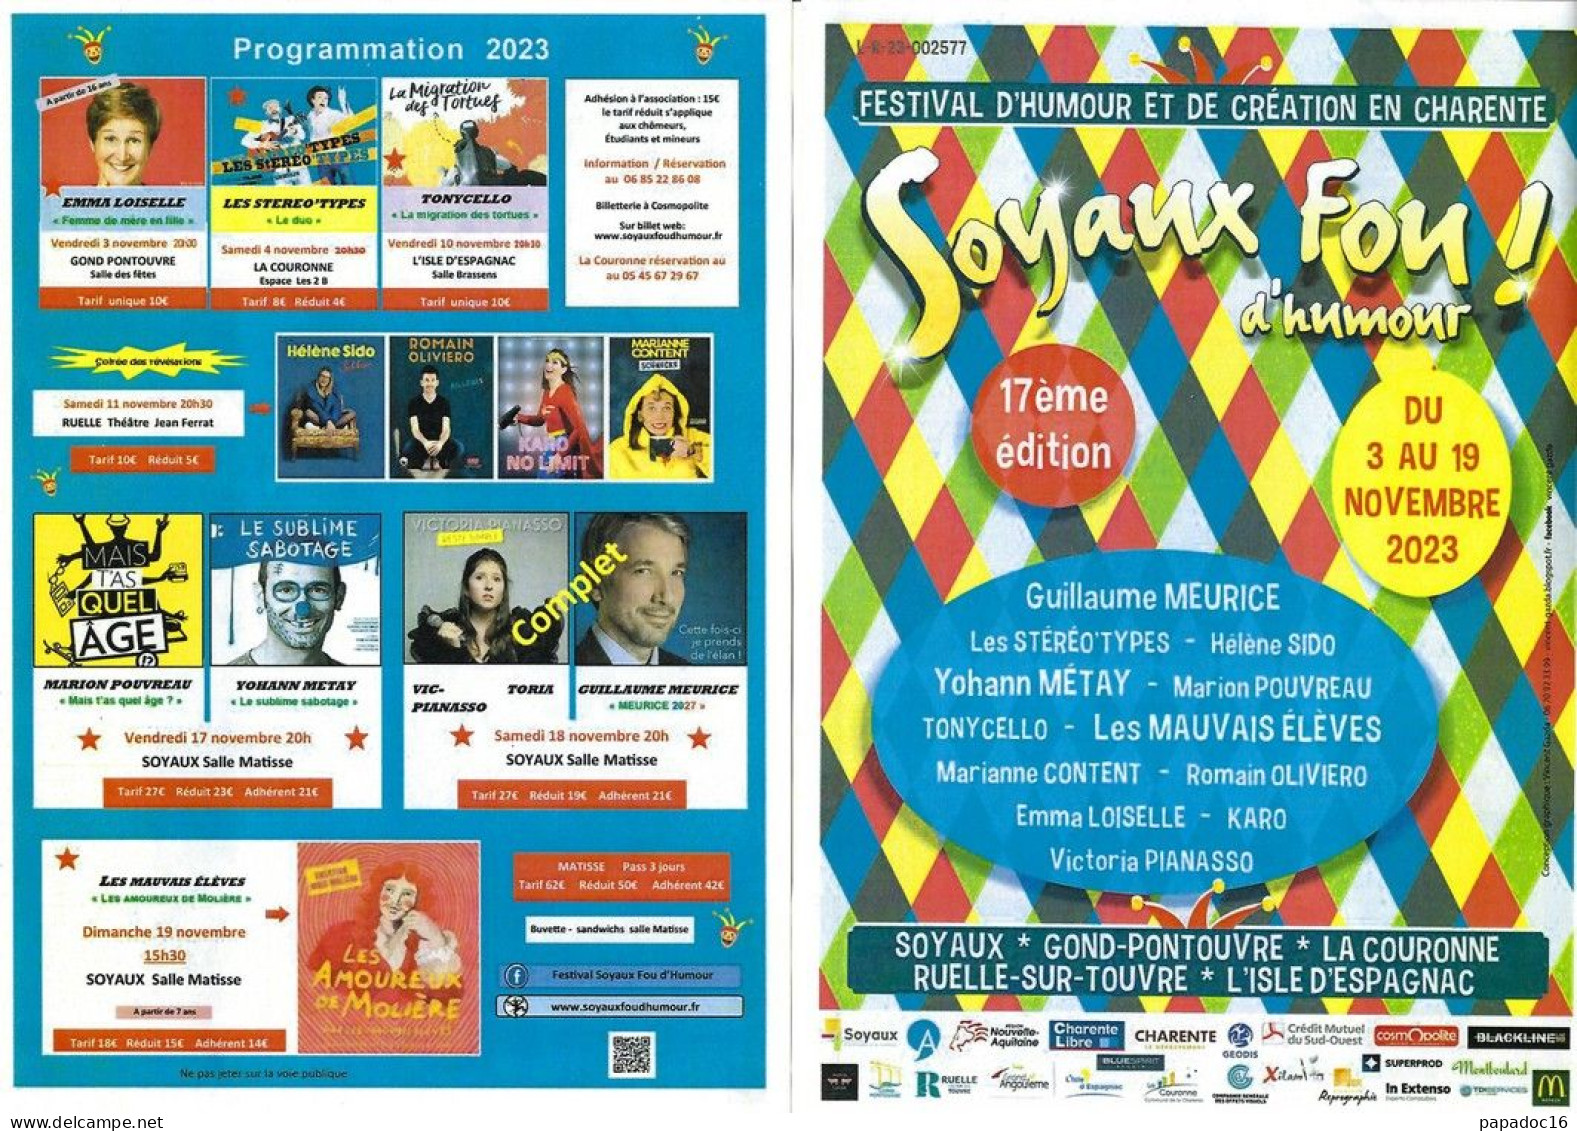 Flyer - Soyaux Fou D'humour ! - 17e Festival D'humour Et De Création En Charente - 3-19 Novembre 2023 - Pubblicitari